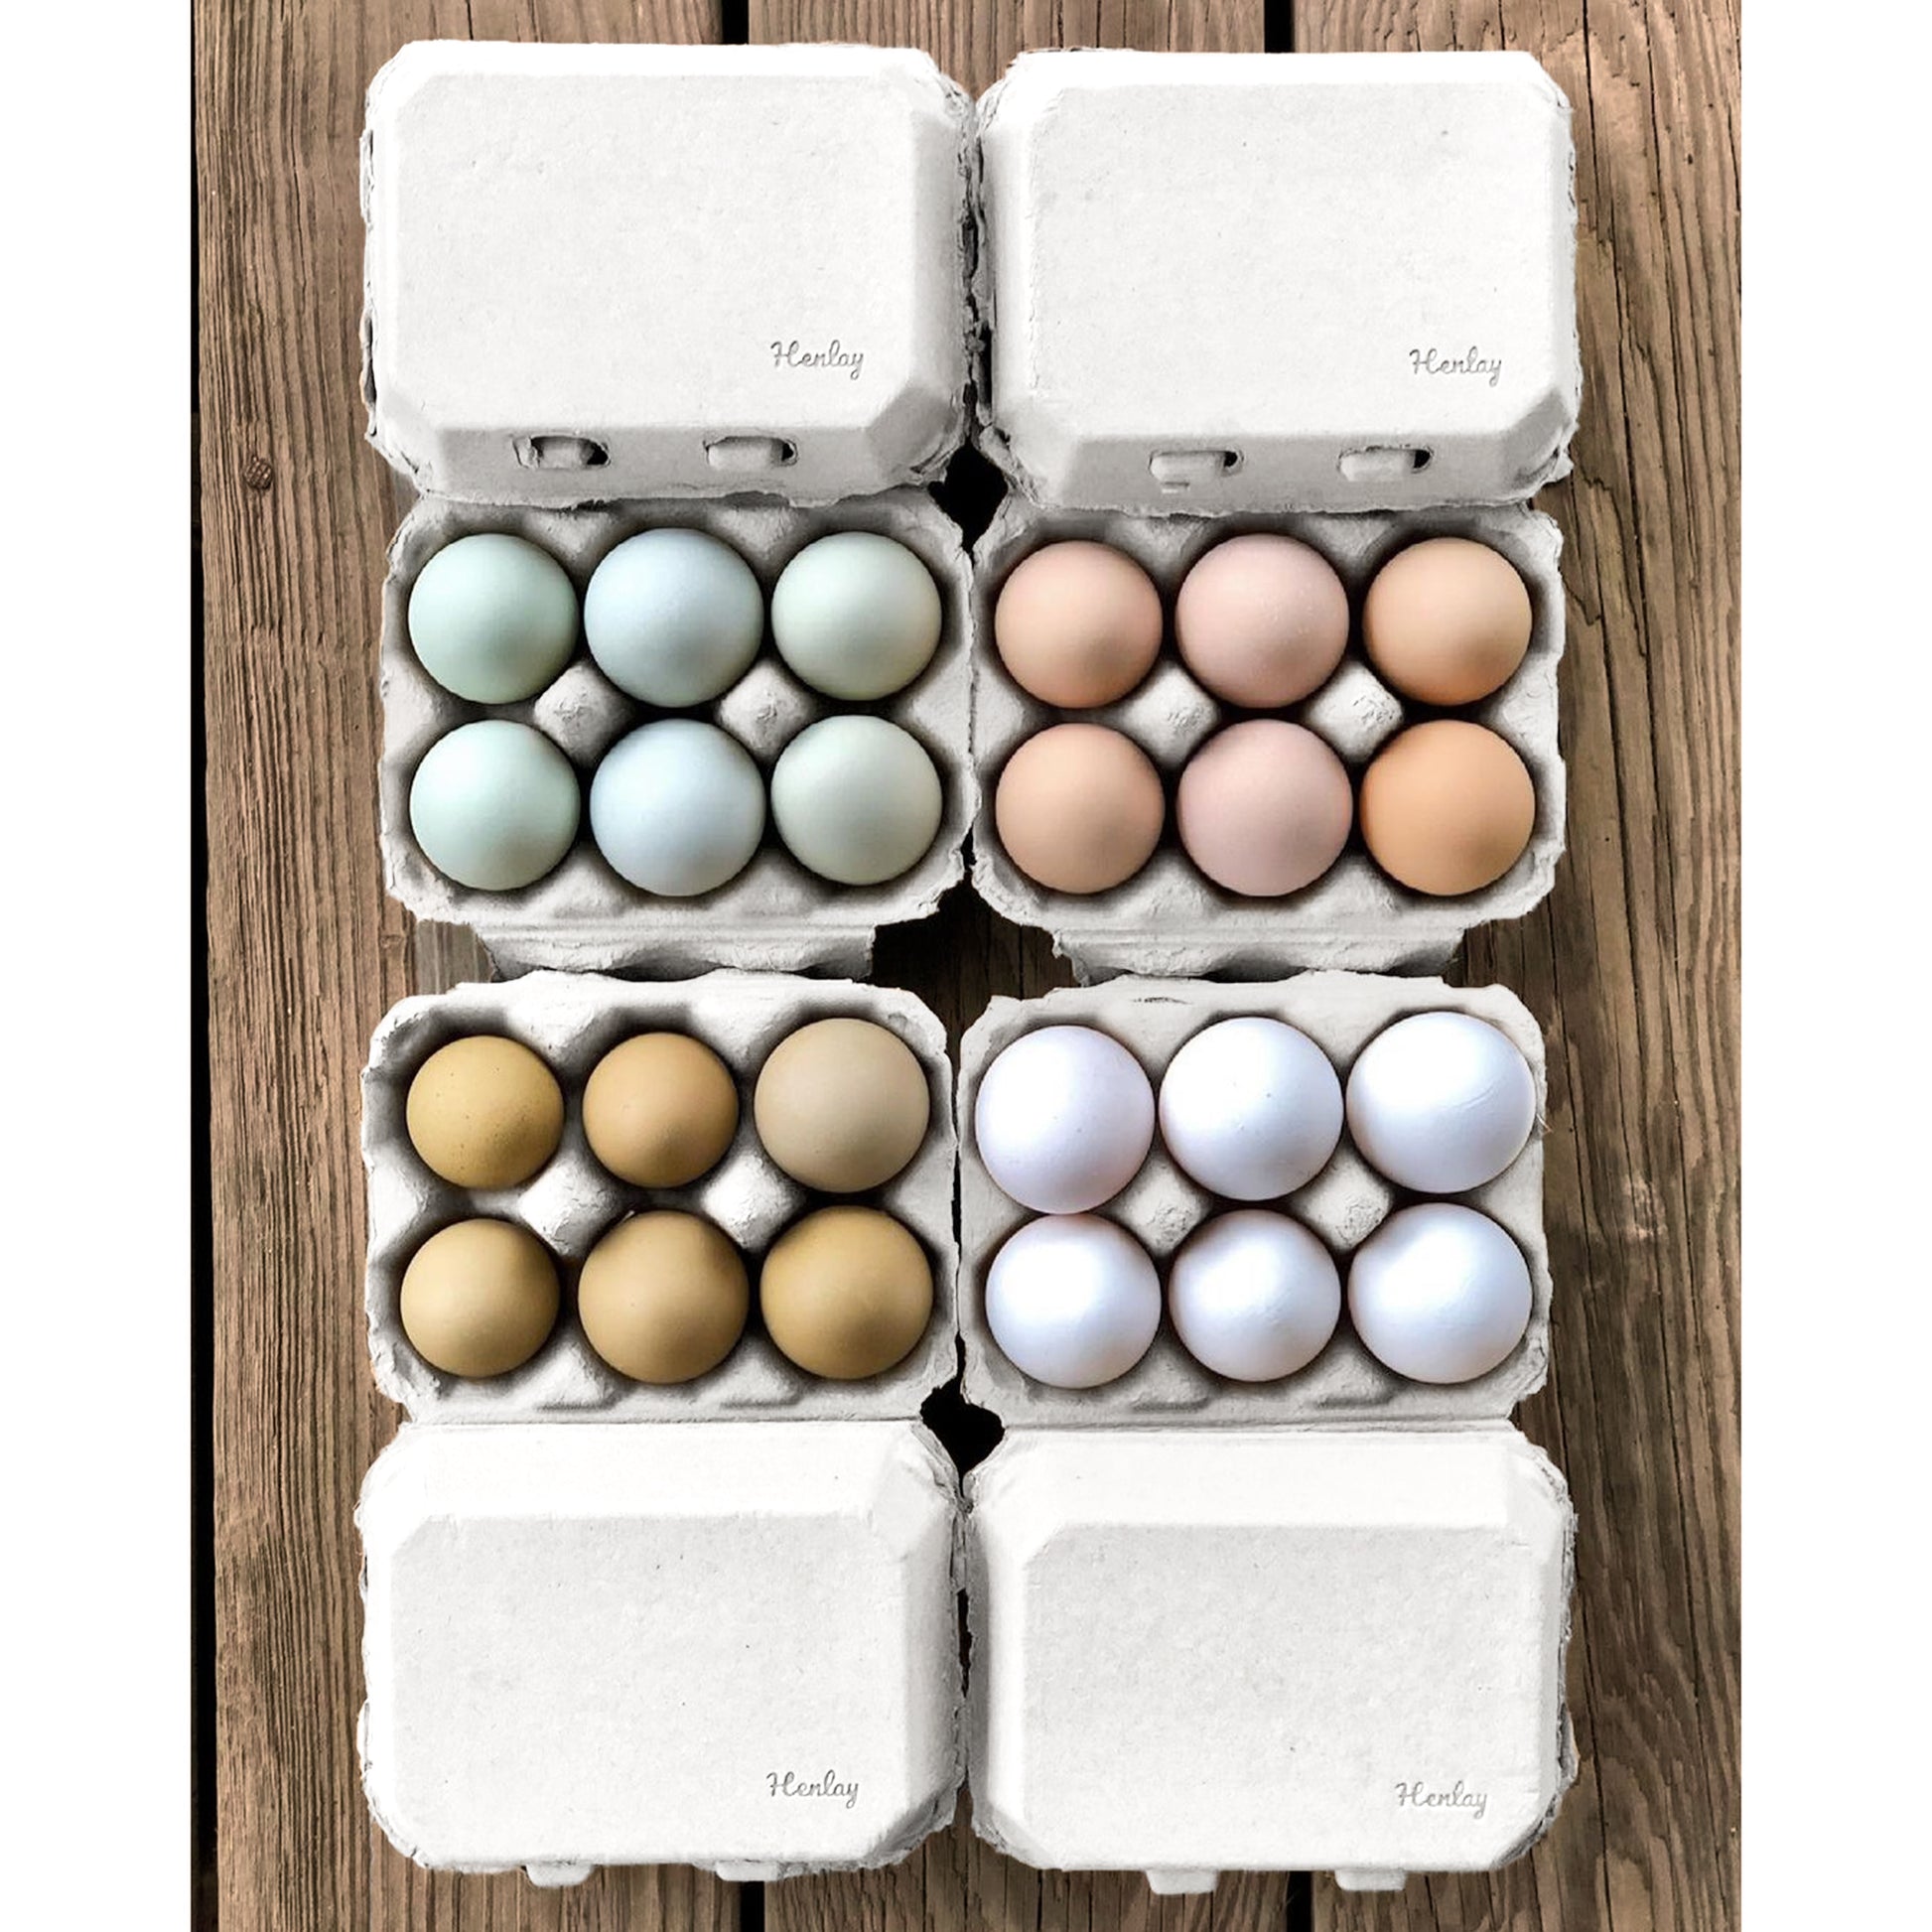 Half Dozen Egg Cartons